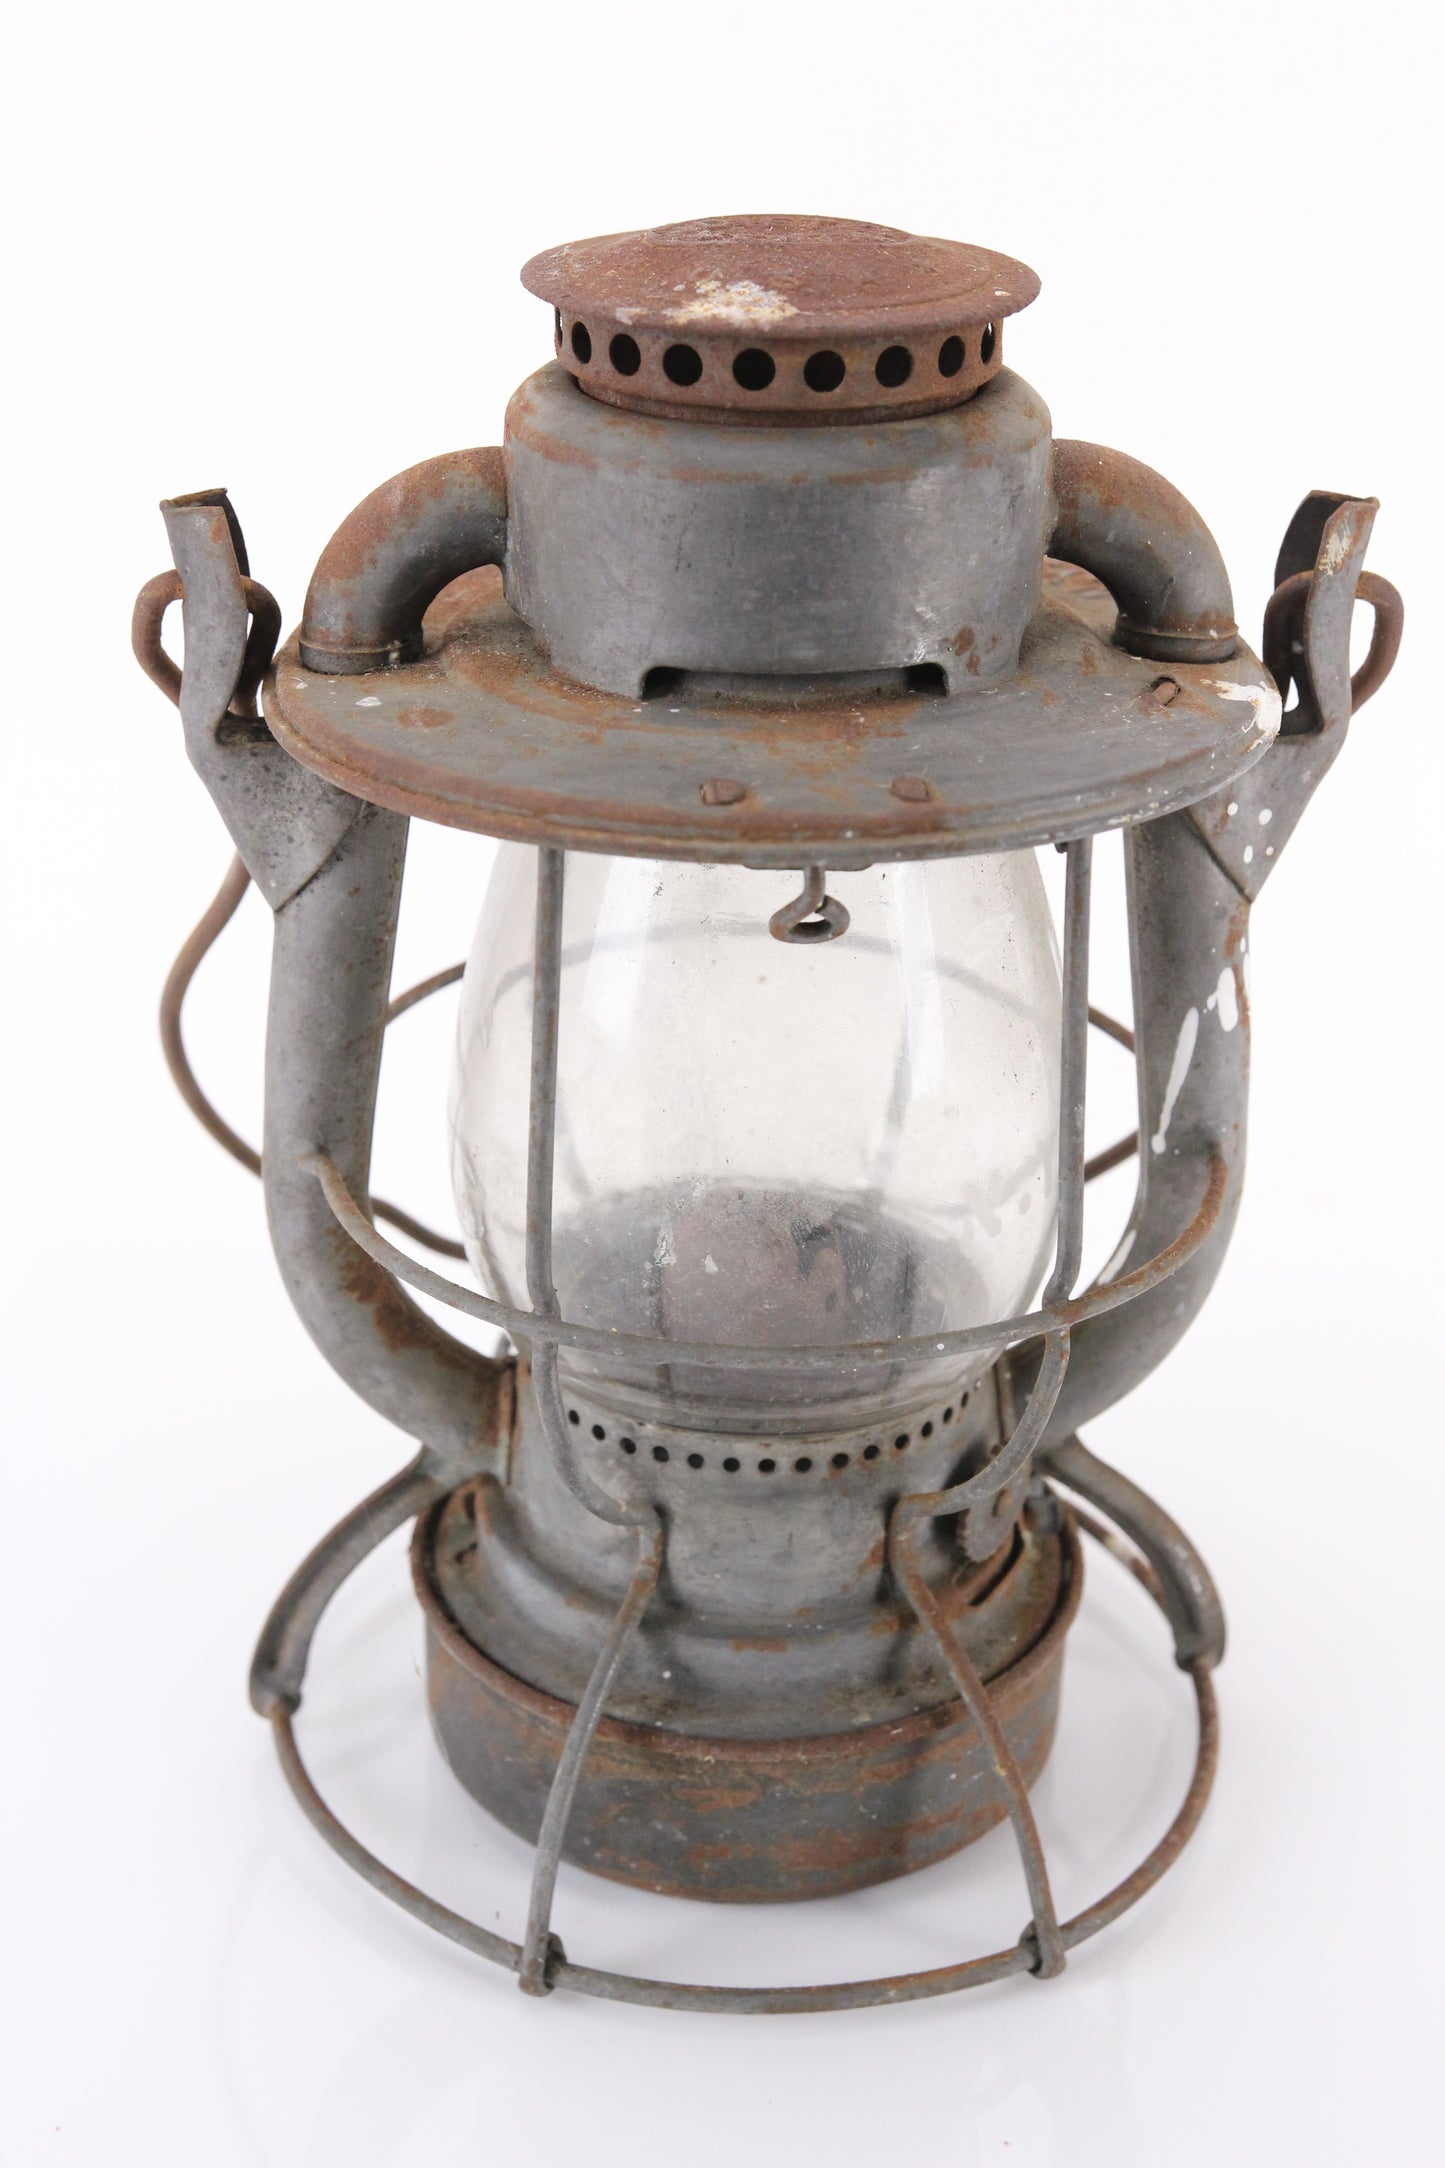 Dietz Vesta New York Central Service N.Y.C.S. Antique Railroad Lantern